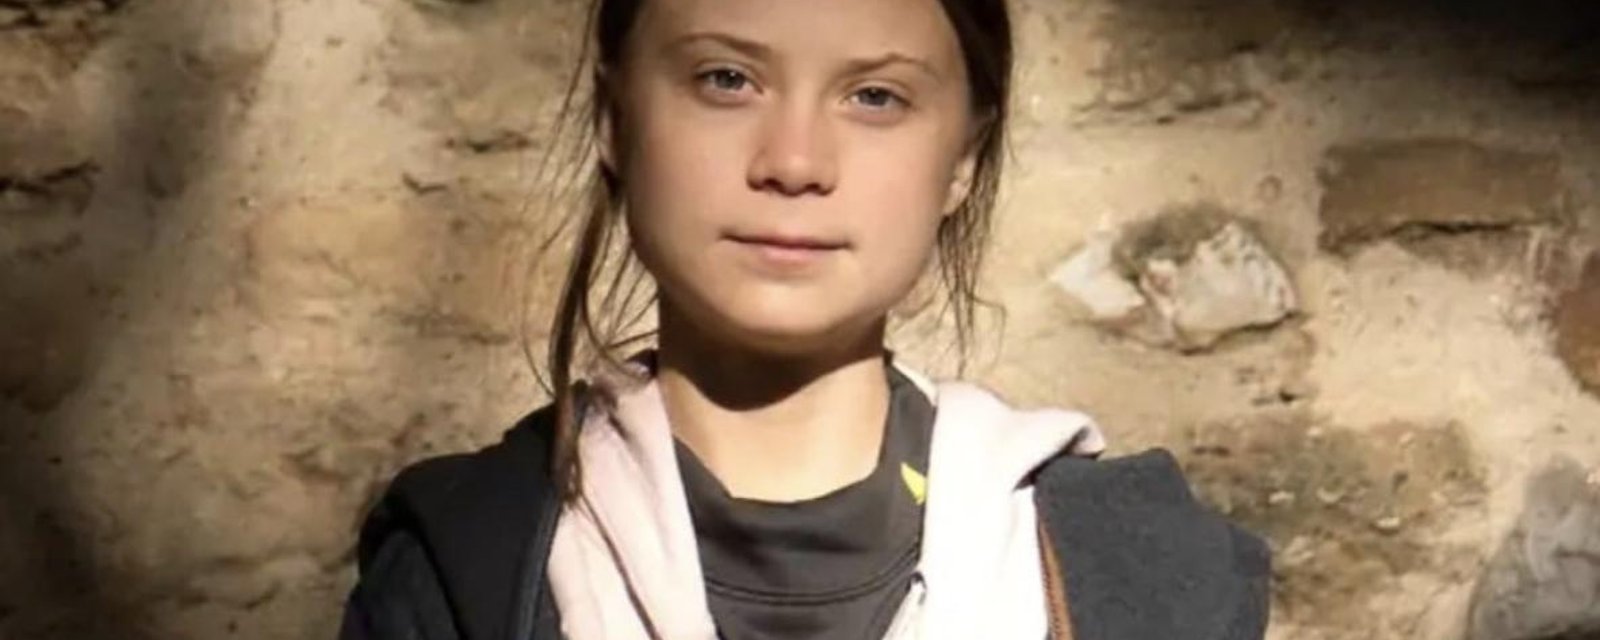 Les internautes sont furieux après le choix de Greta Thunberg comme personnalité de l'année TIME